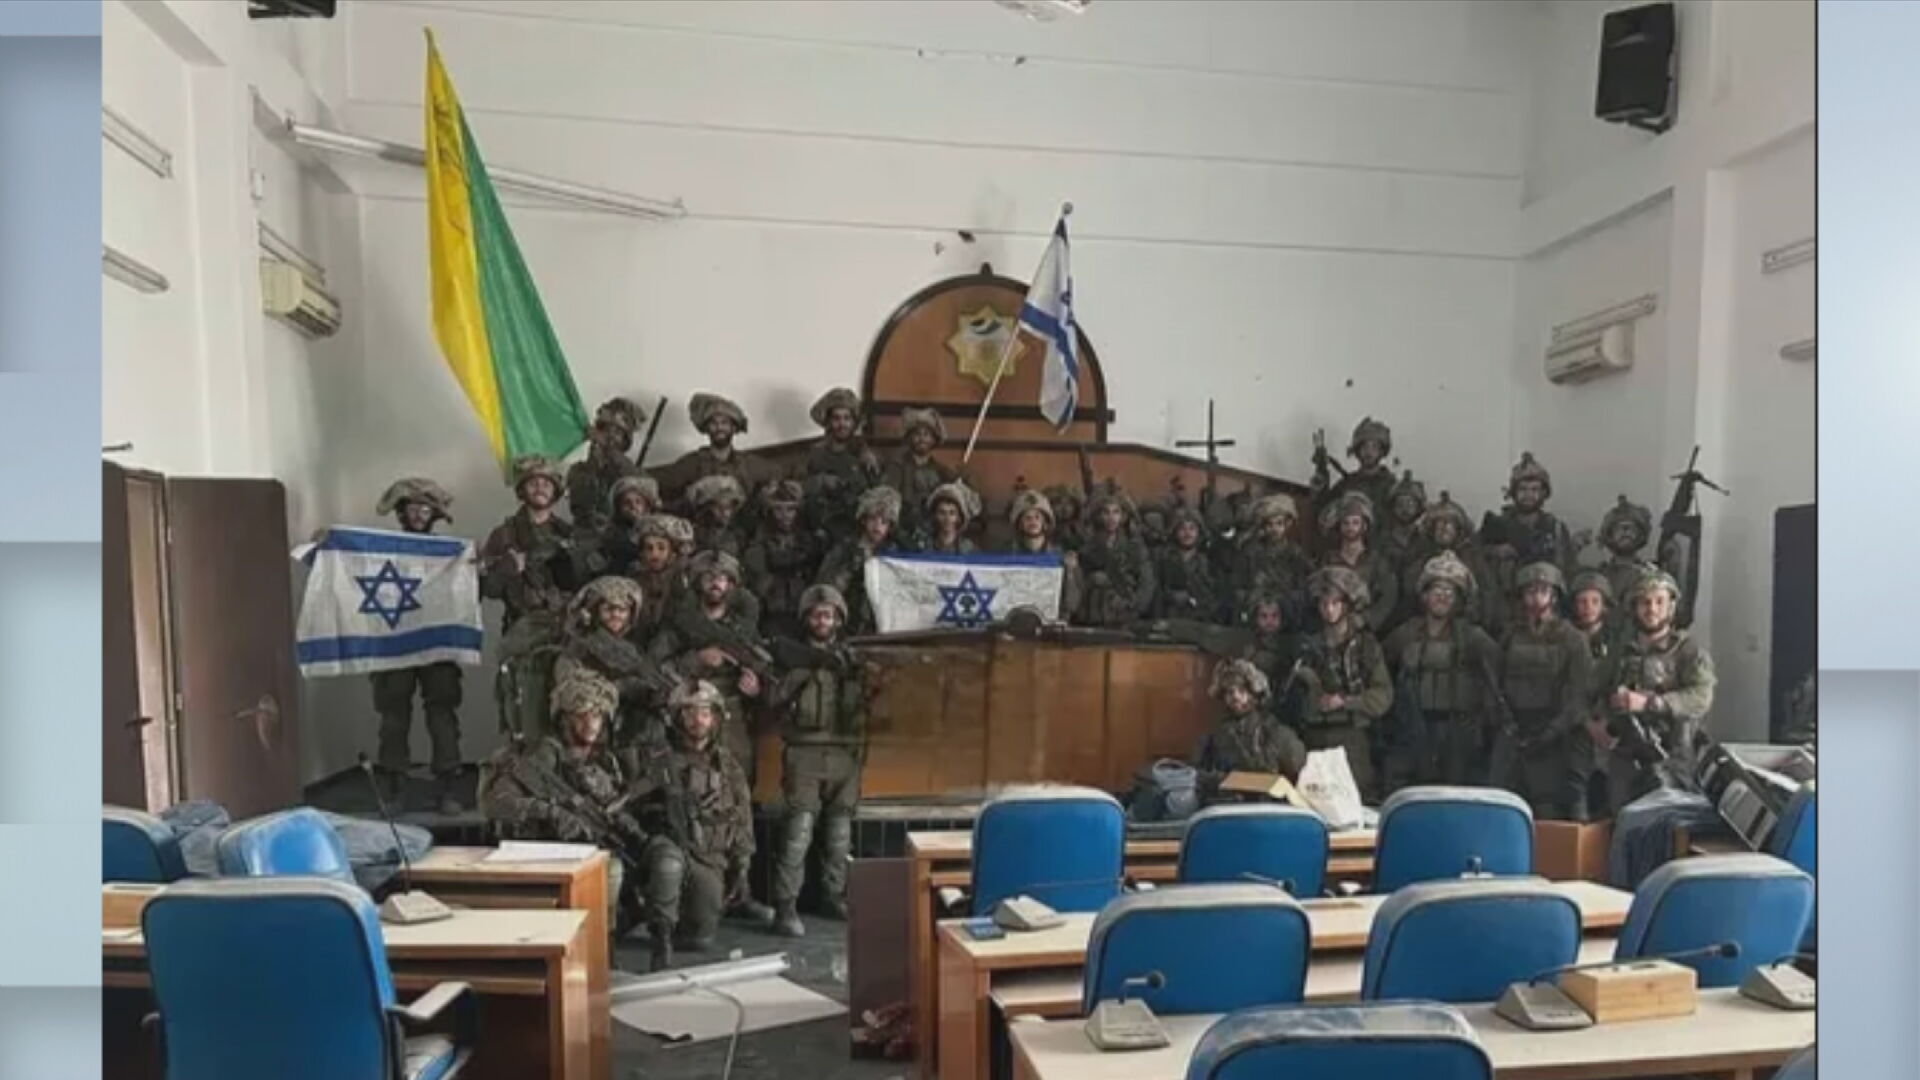 Ο στρατός του Ισραήλ μπήκε στο κοινοβούλιο της Γάζας, σύμφωνα με ισραηλινά ΜΜΕ